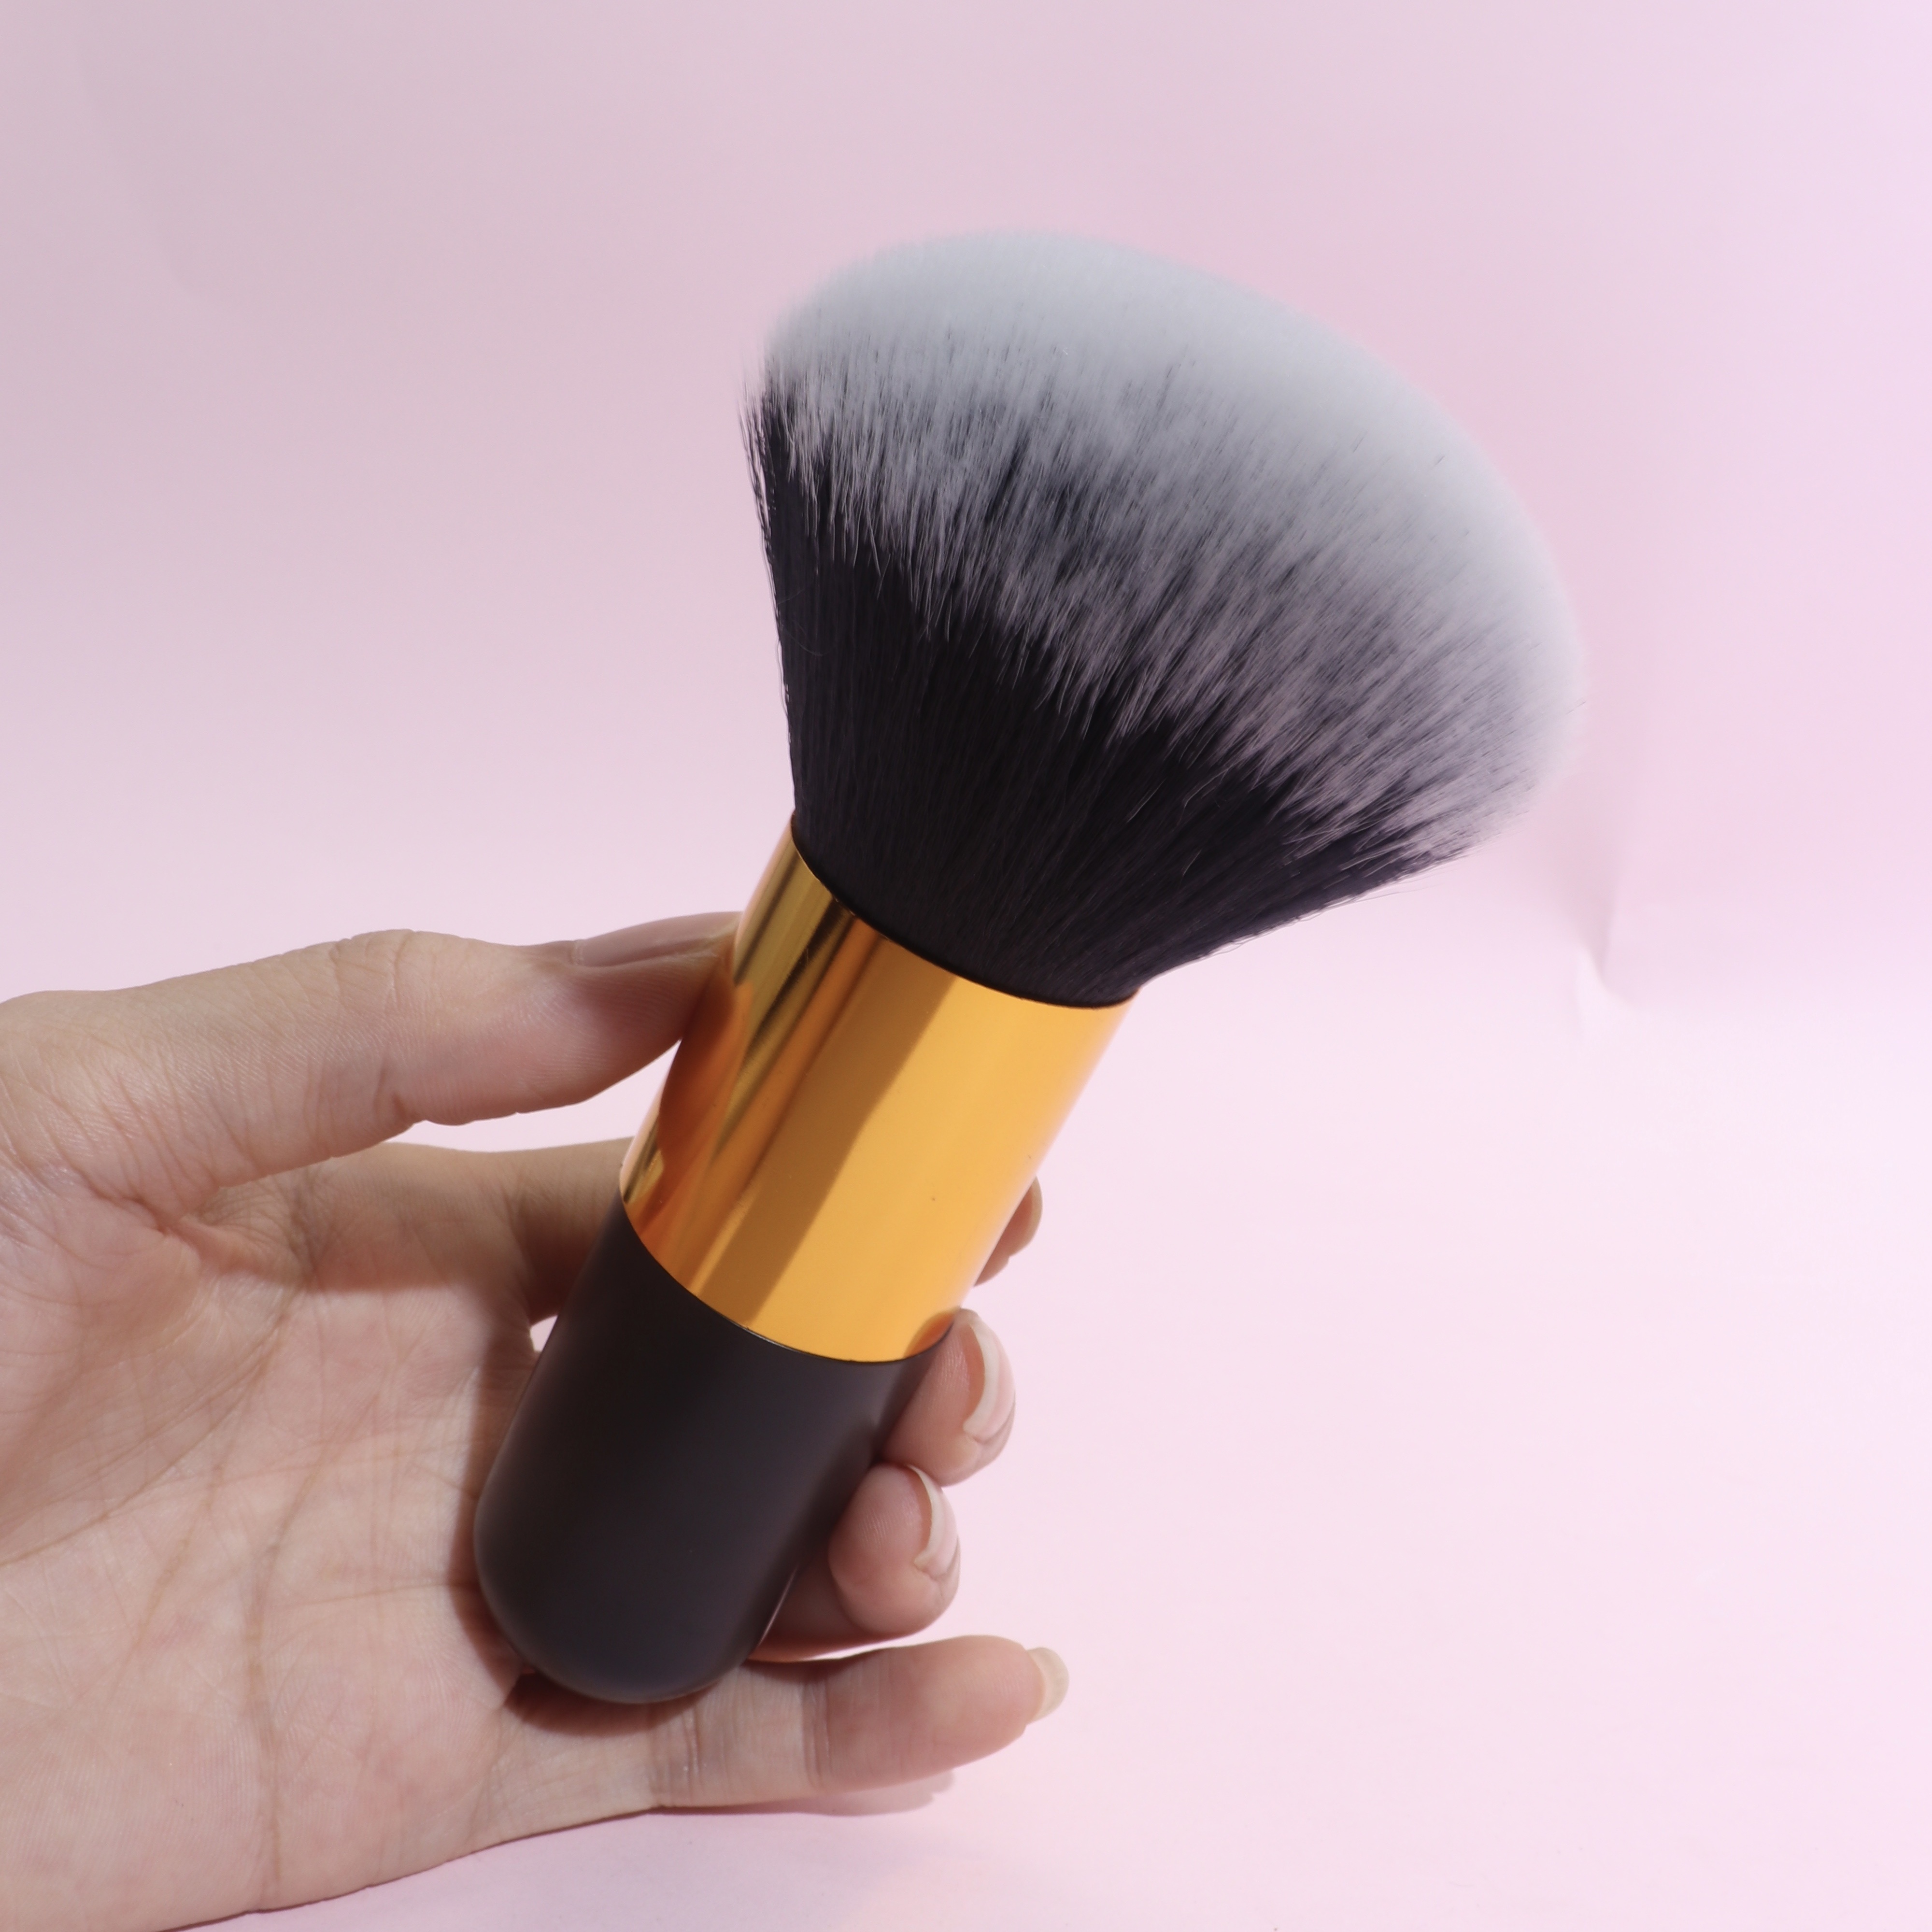 

1pc Powder Makeup Brush Kabuki Brush, Single Large Makeup Brush Soft Face Mineral Powder Brush Blush Brush For Blending Makeup